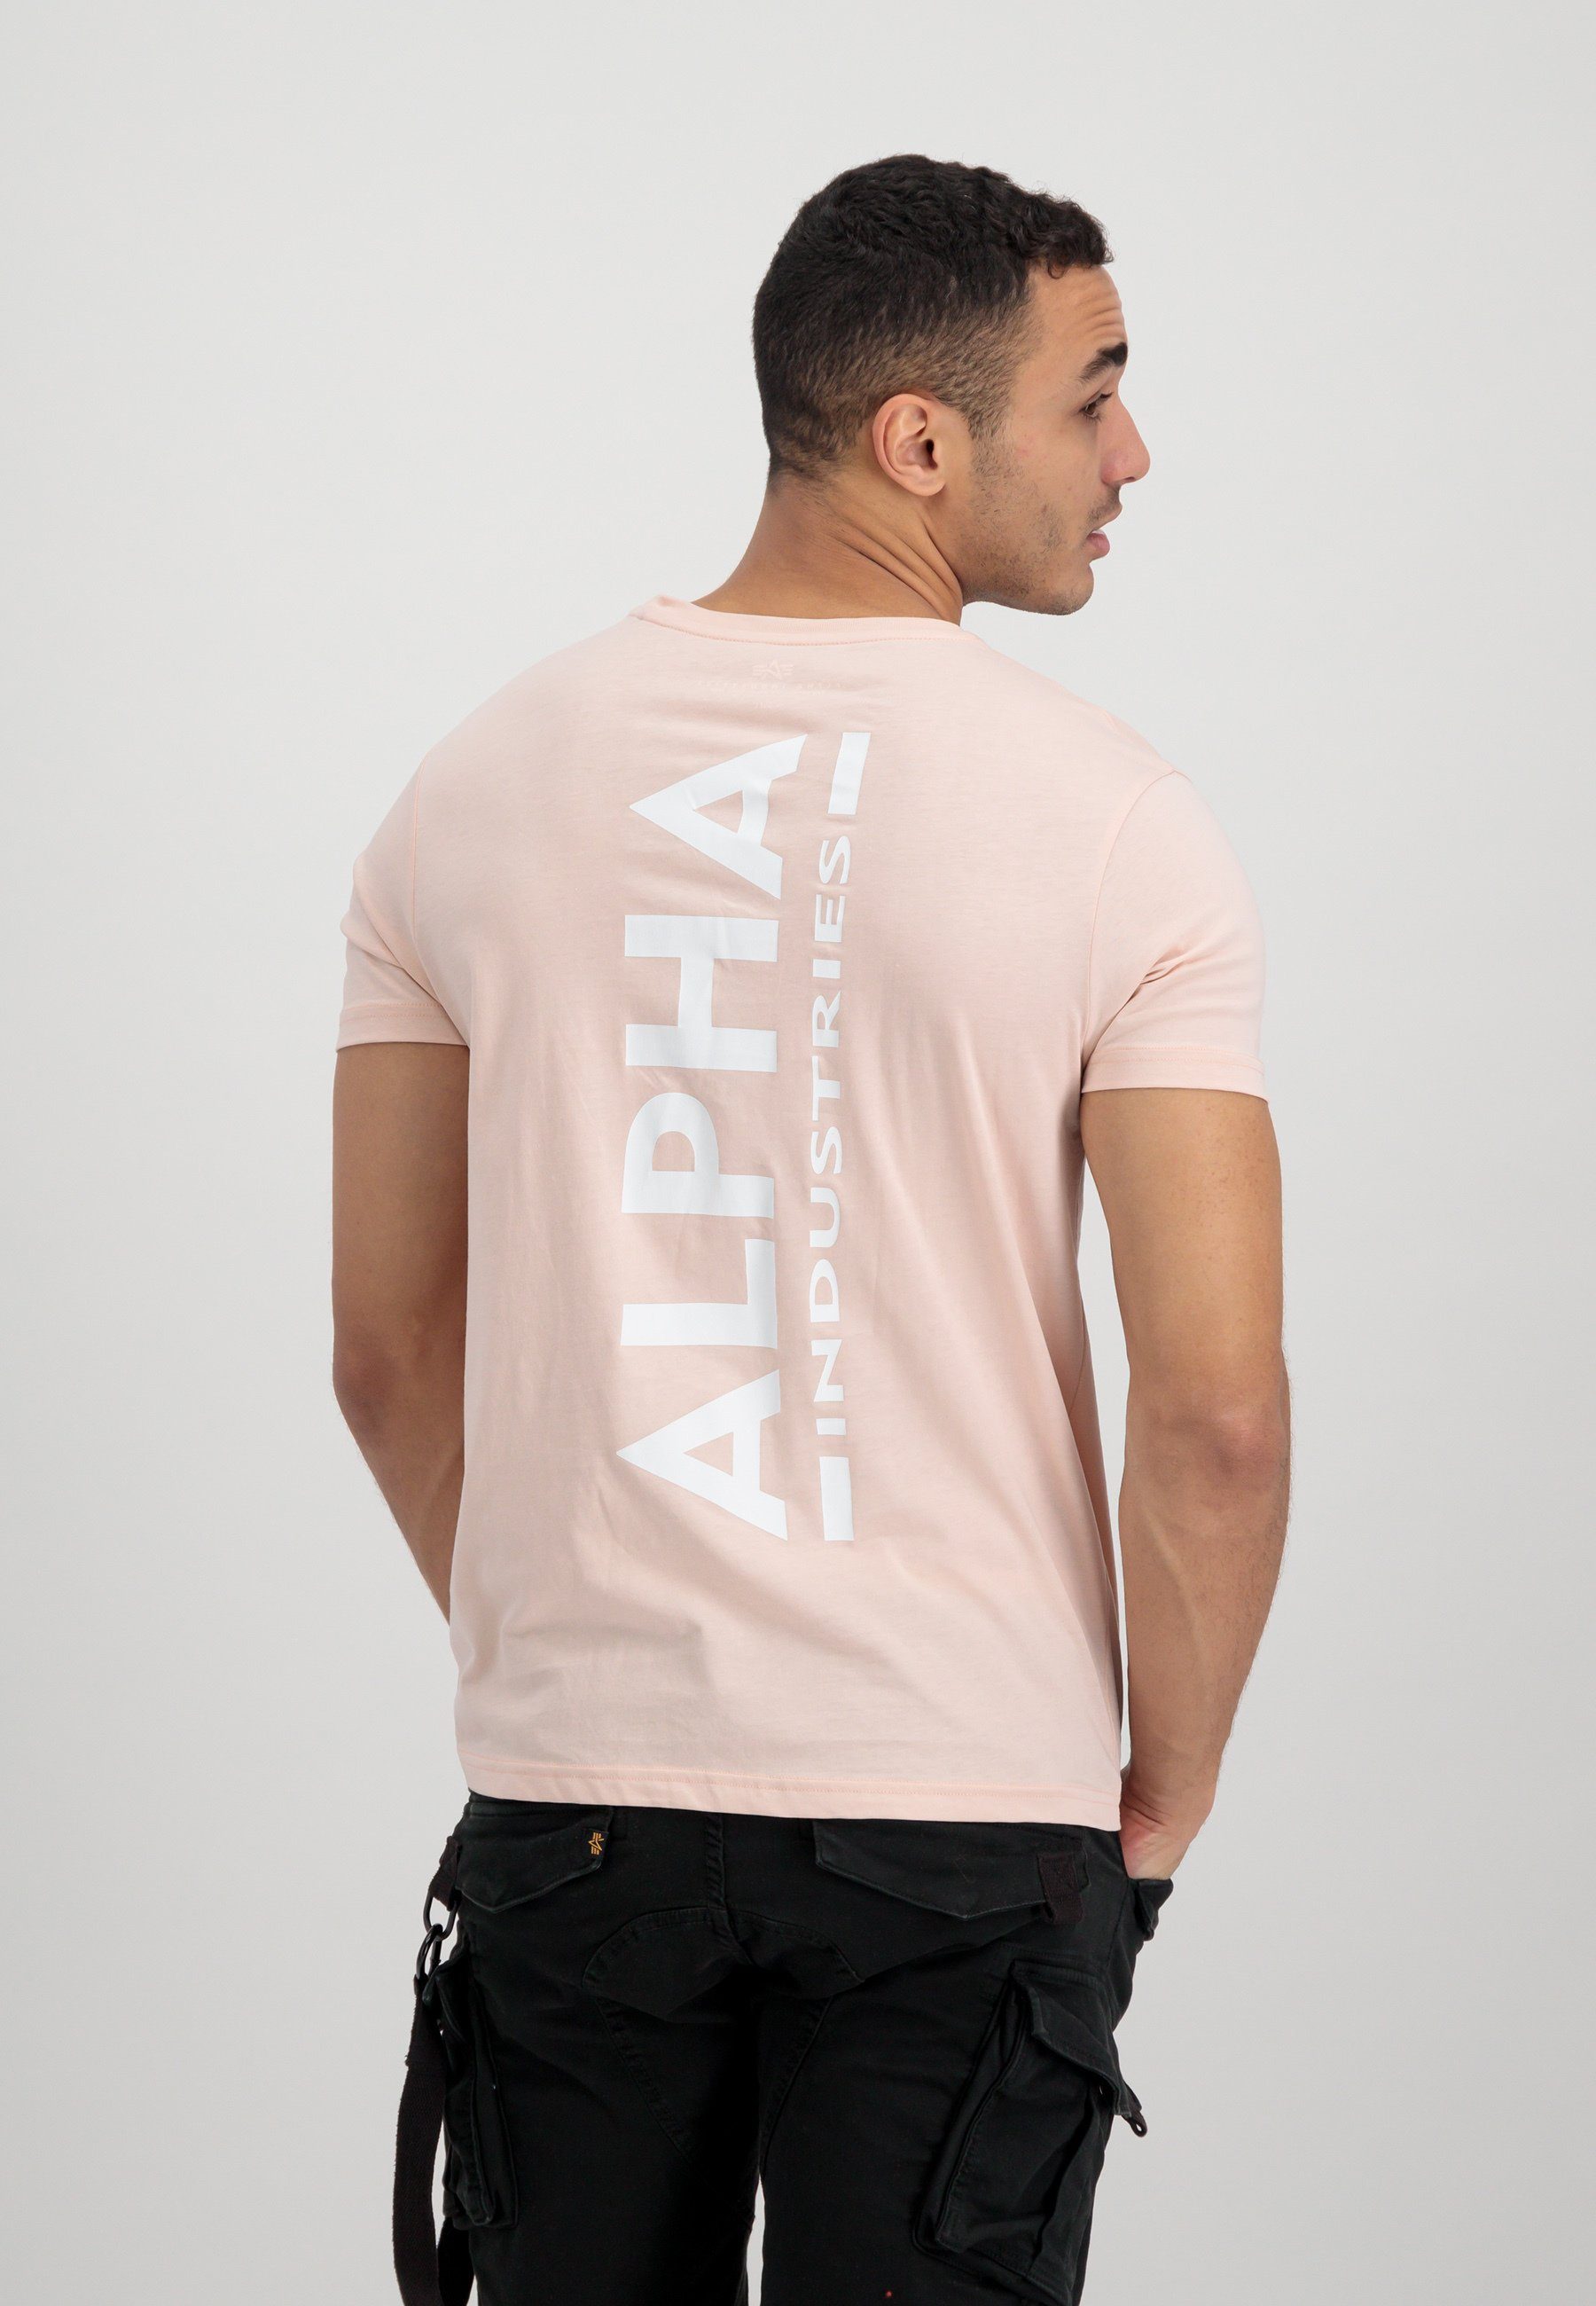 Alpha T Alpha Industries Industries T-Shirt T-Shirts - Men pink Backprint